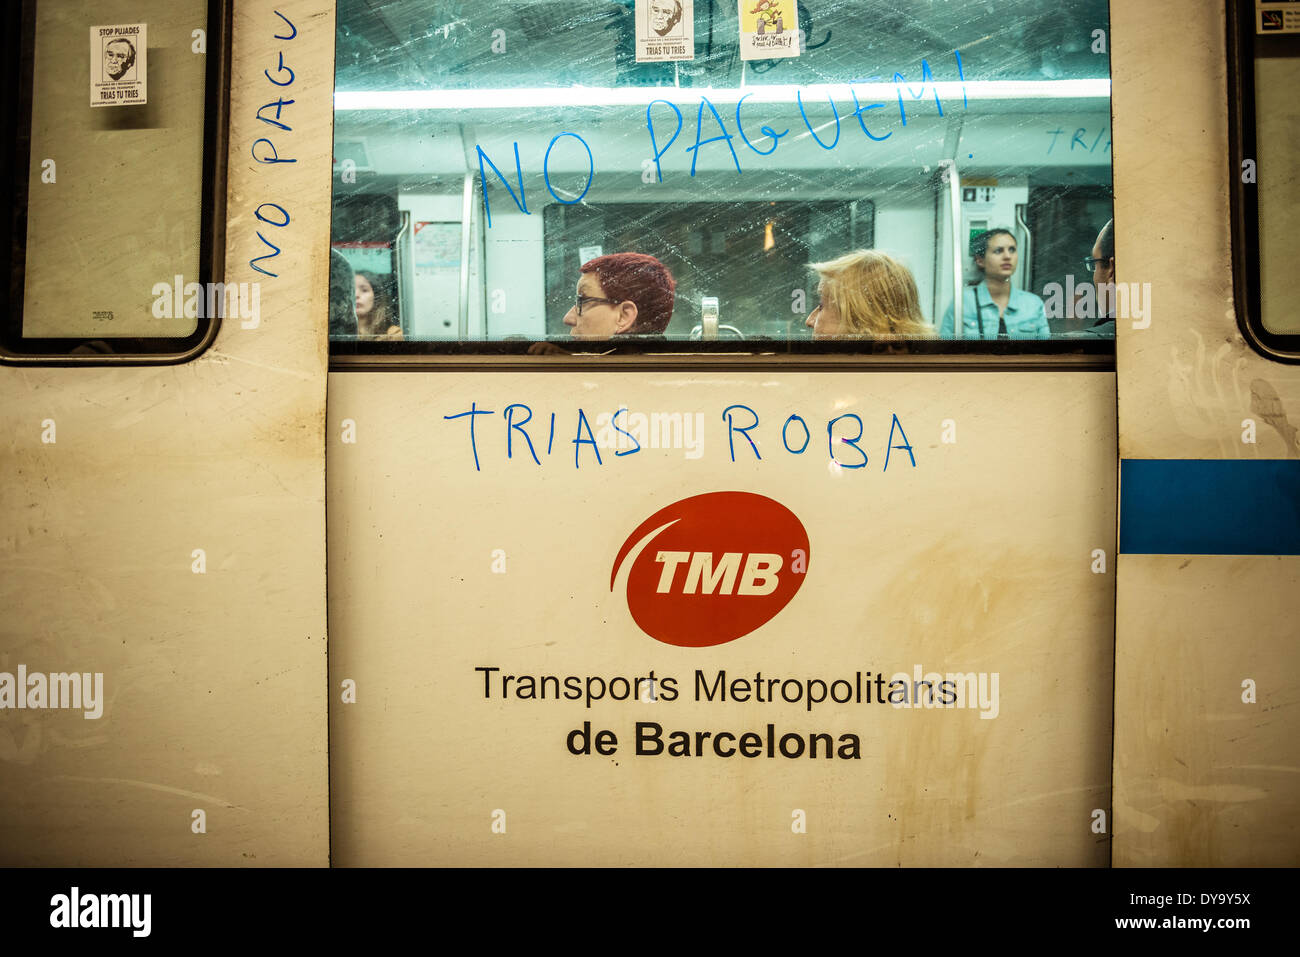 Barcelone, Espagne. 10 avril 2014 : Un métro s'est arrêté pendant une manifestation contre le faux billet pour les transports publics de Barcelone : Crédit matthi/Alamy Live News Banque D'Images